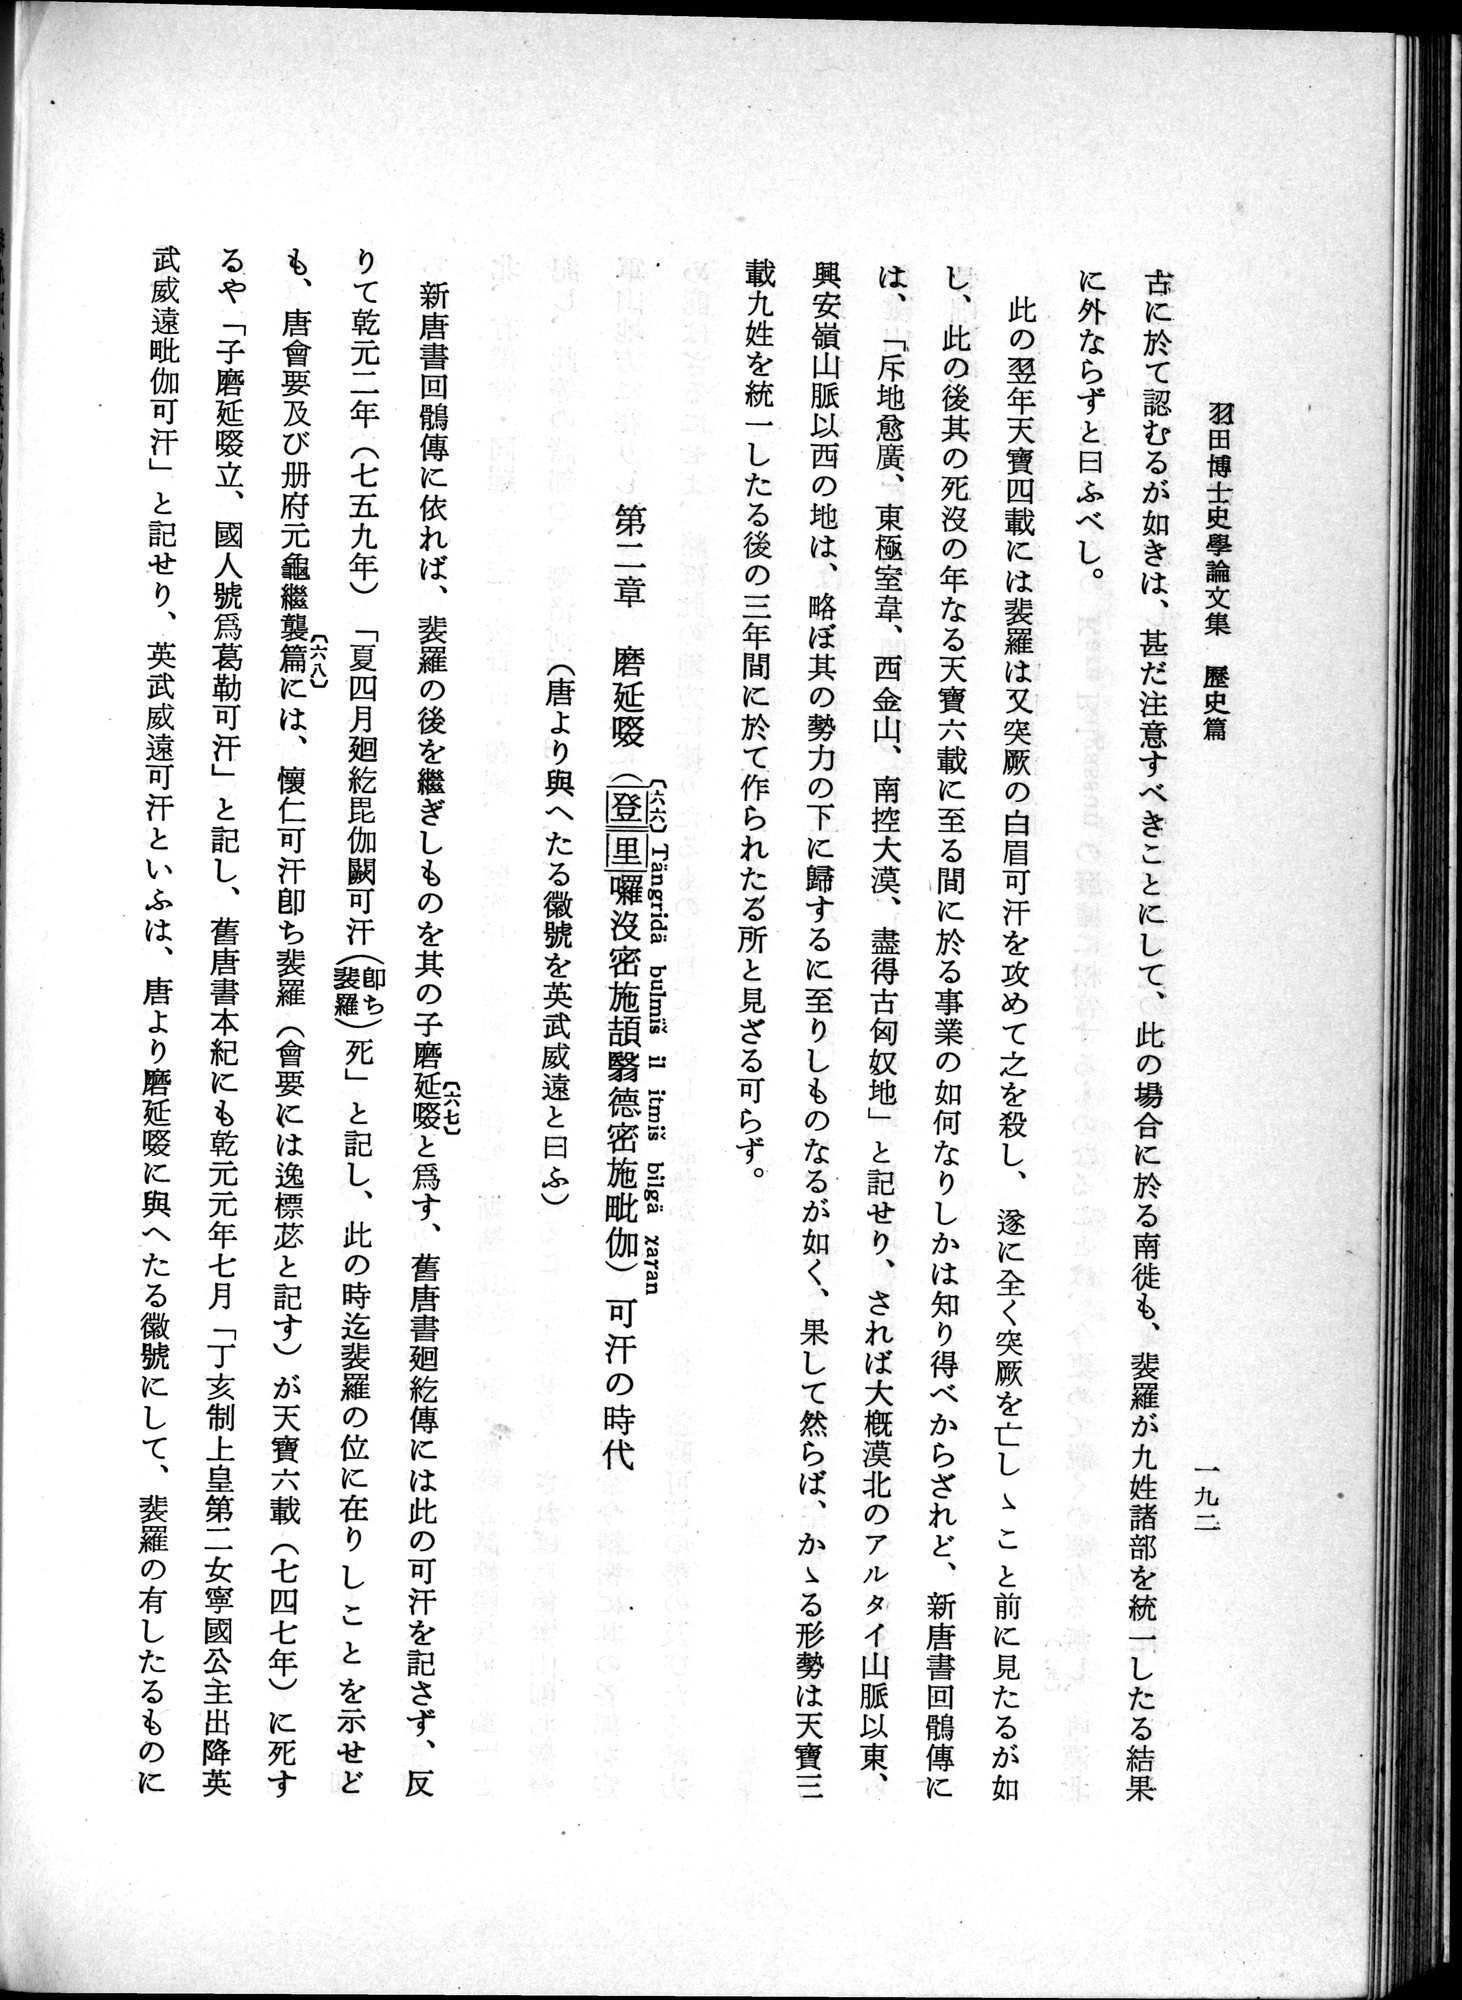 羽田博士史学論文集 : vol.1 / Page 230 (Grayscale High Resolution Image)